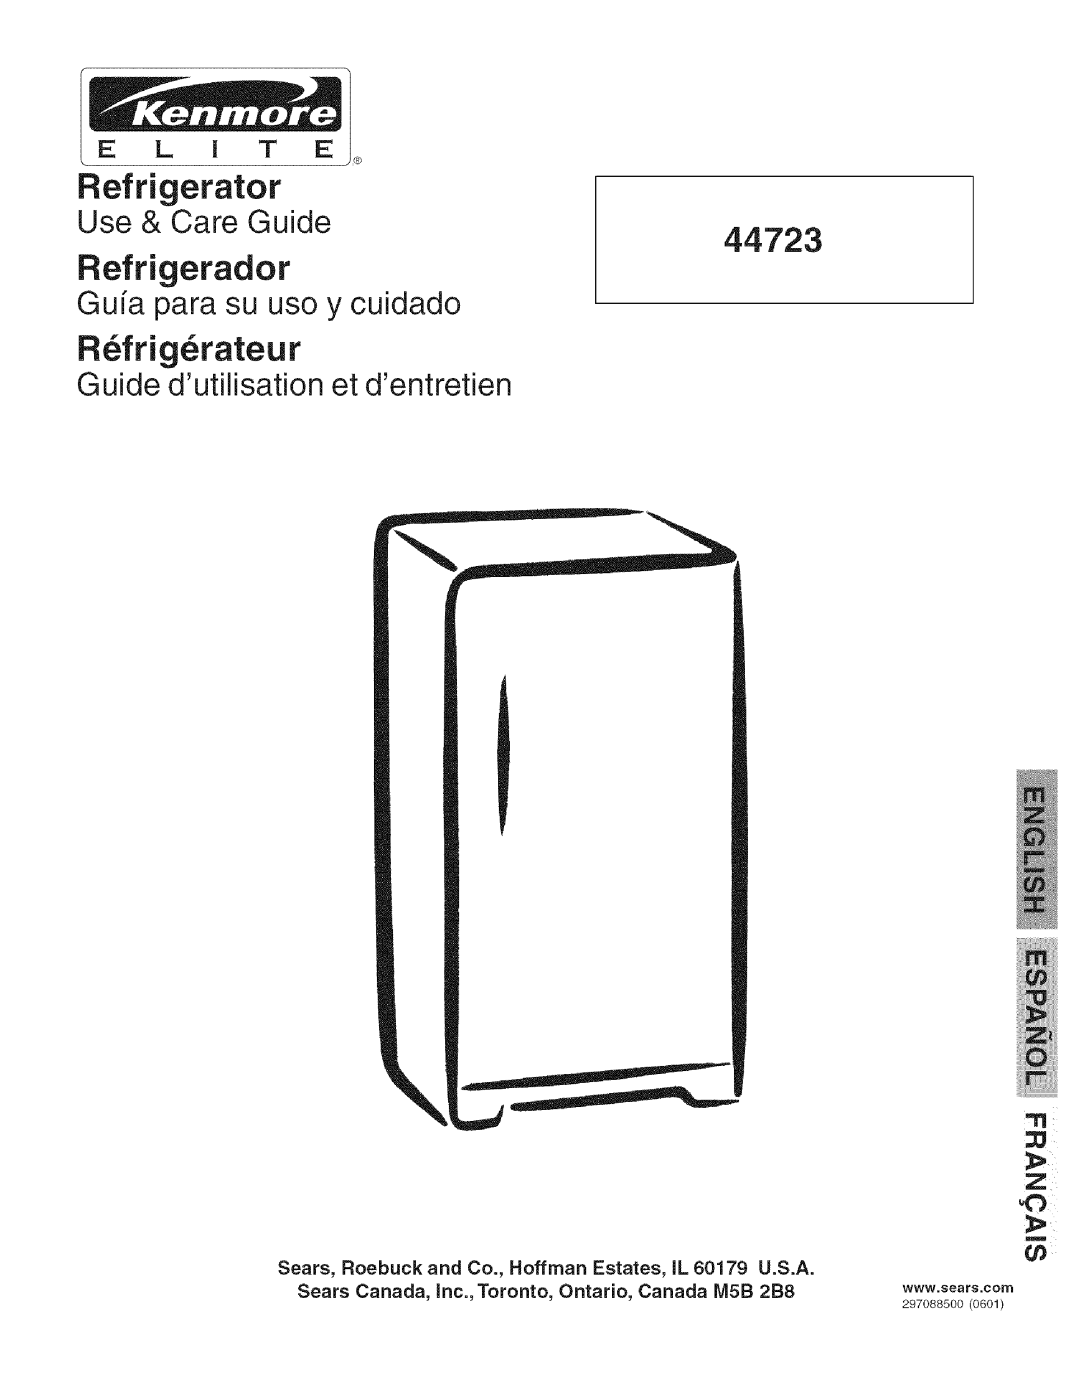 Kenmore 25344723104 manual Refrigerator, Refrigerador, R frig rateur, Use & Care Guide, Gufa para su uso y cuidado 